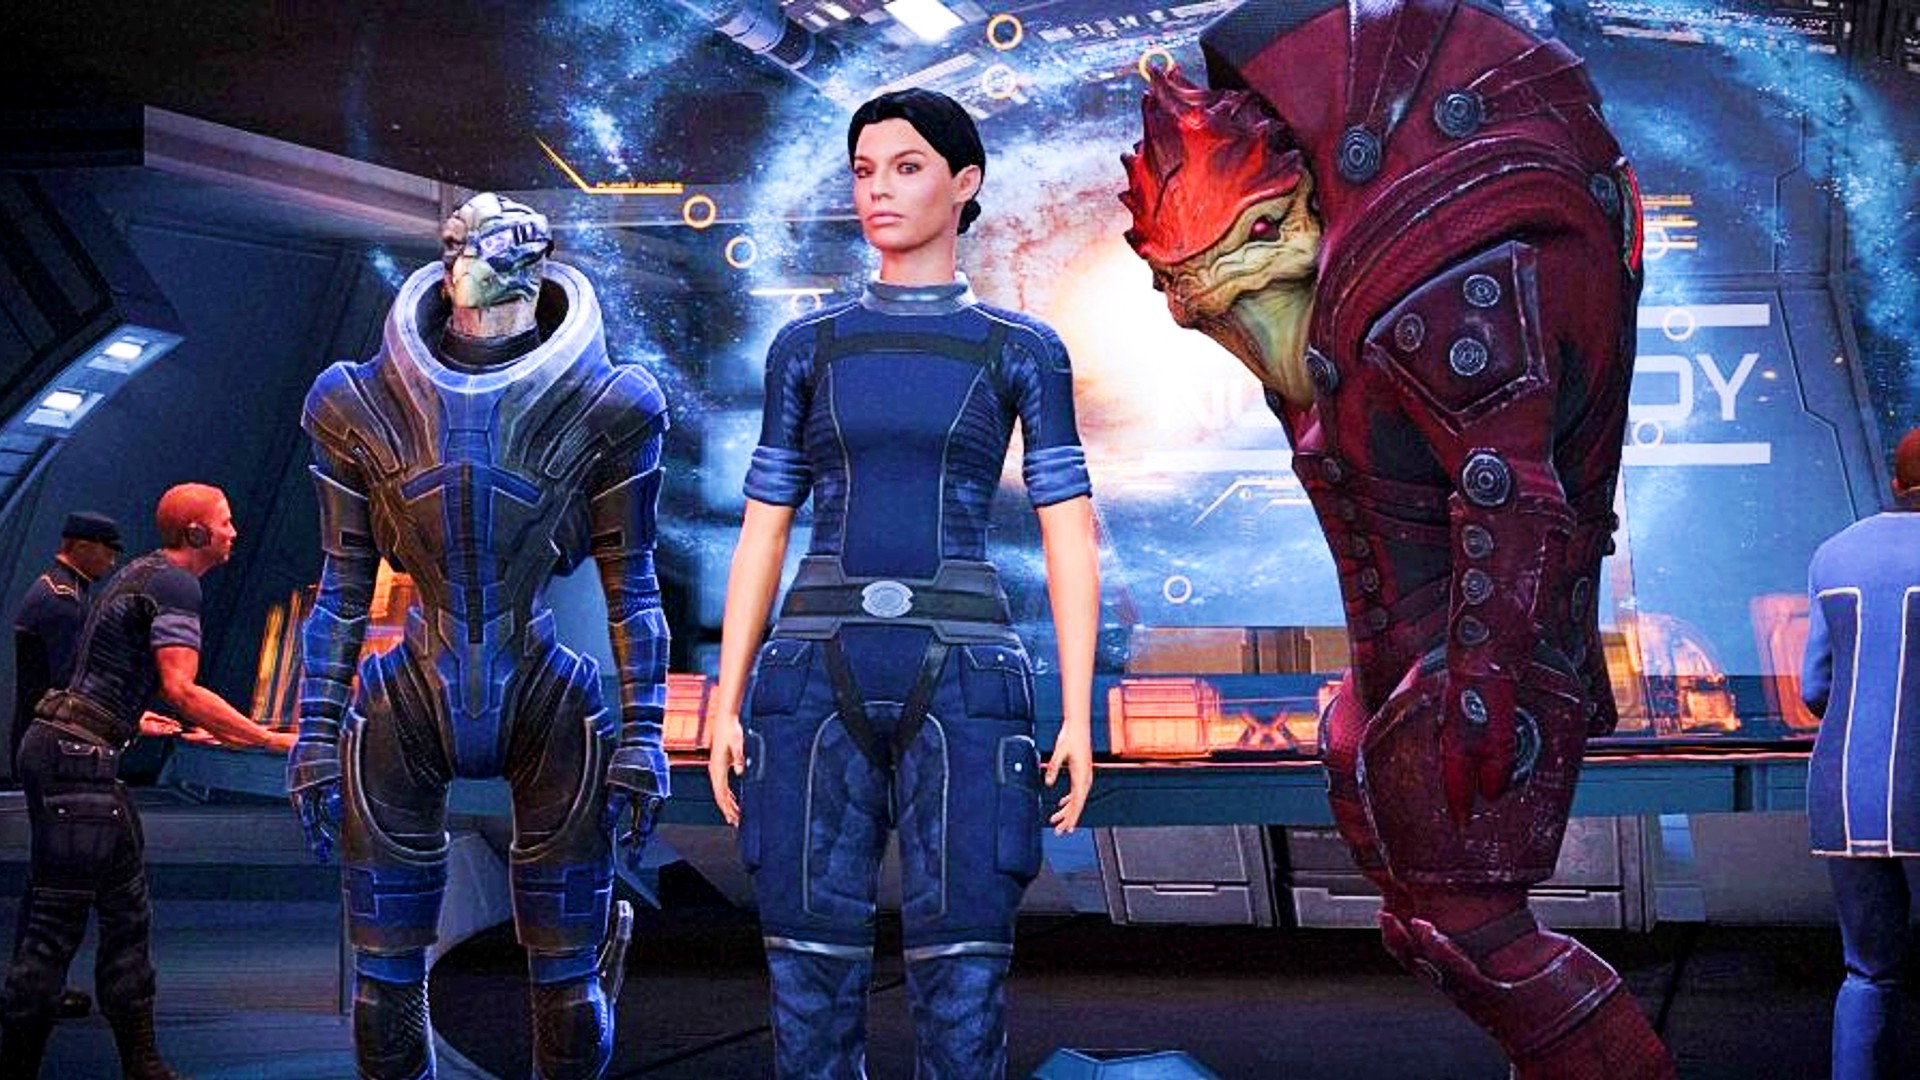 أفضل ألعاب RPG: الطبعة الأسطورية Mass Effect. تظهر الصورة إنسانيًا أنثويًا بين مخلوقات غريبة